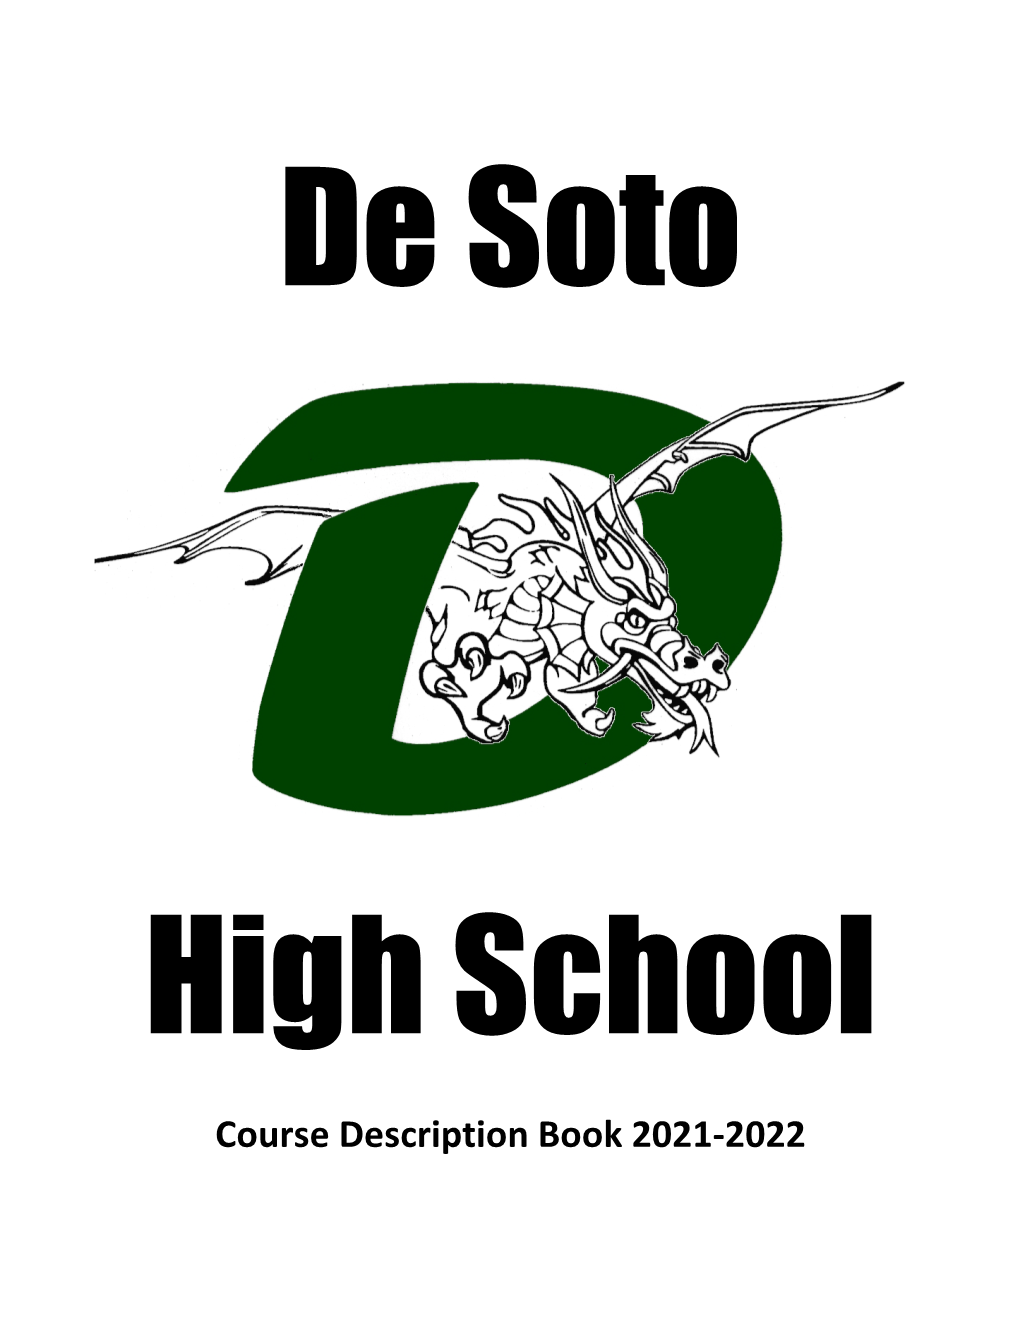 Course Description Book 2021-2022